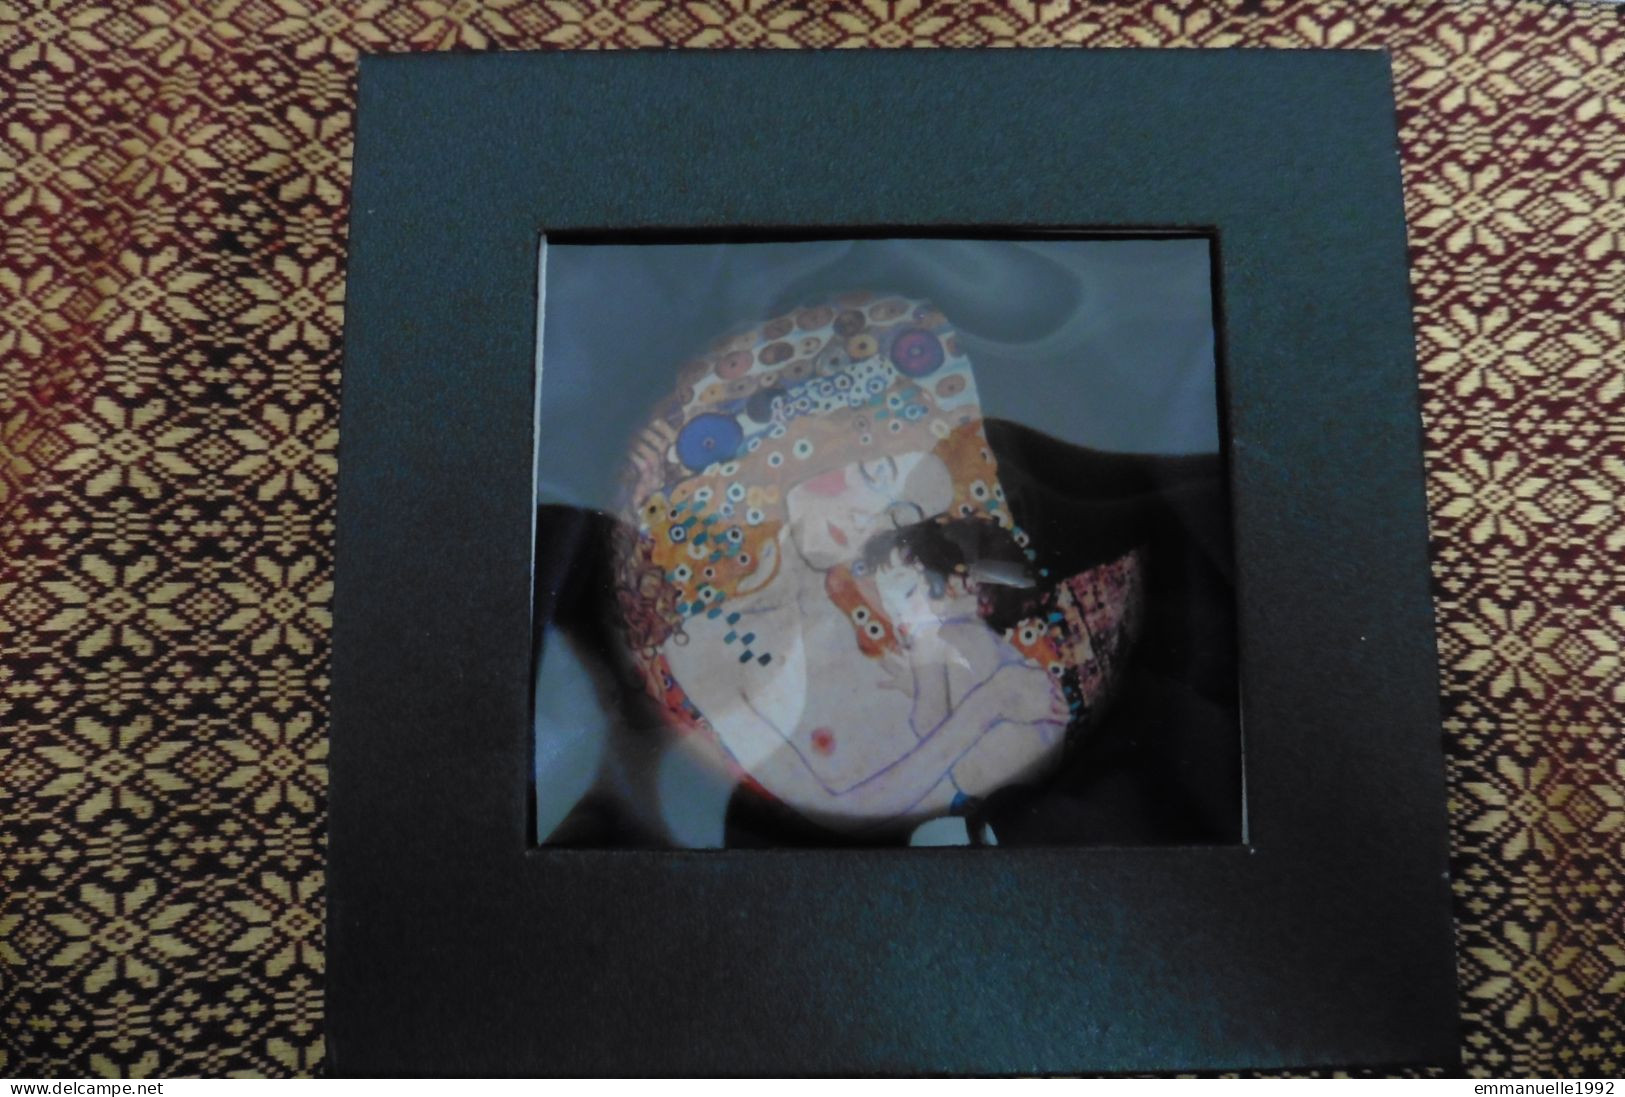 Presse papier en verre Femme et enfant Les trois âges de la vie de Gustav Klimt - Edition spéciale Boutiques de Musées